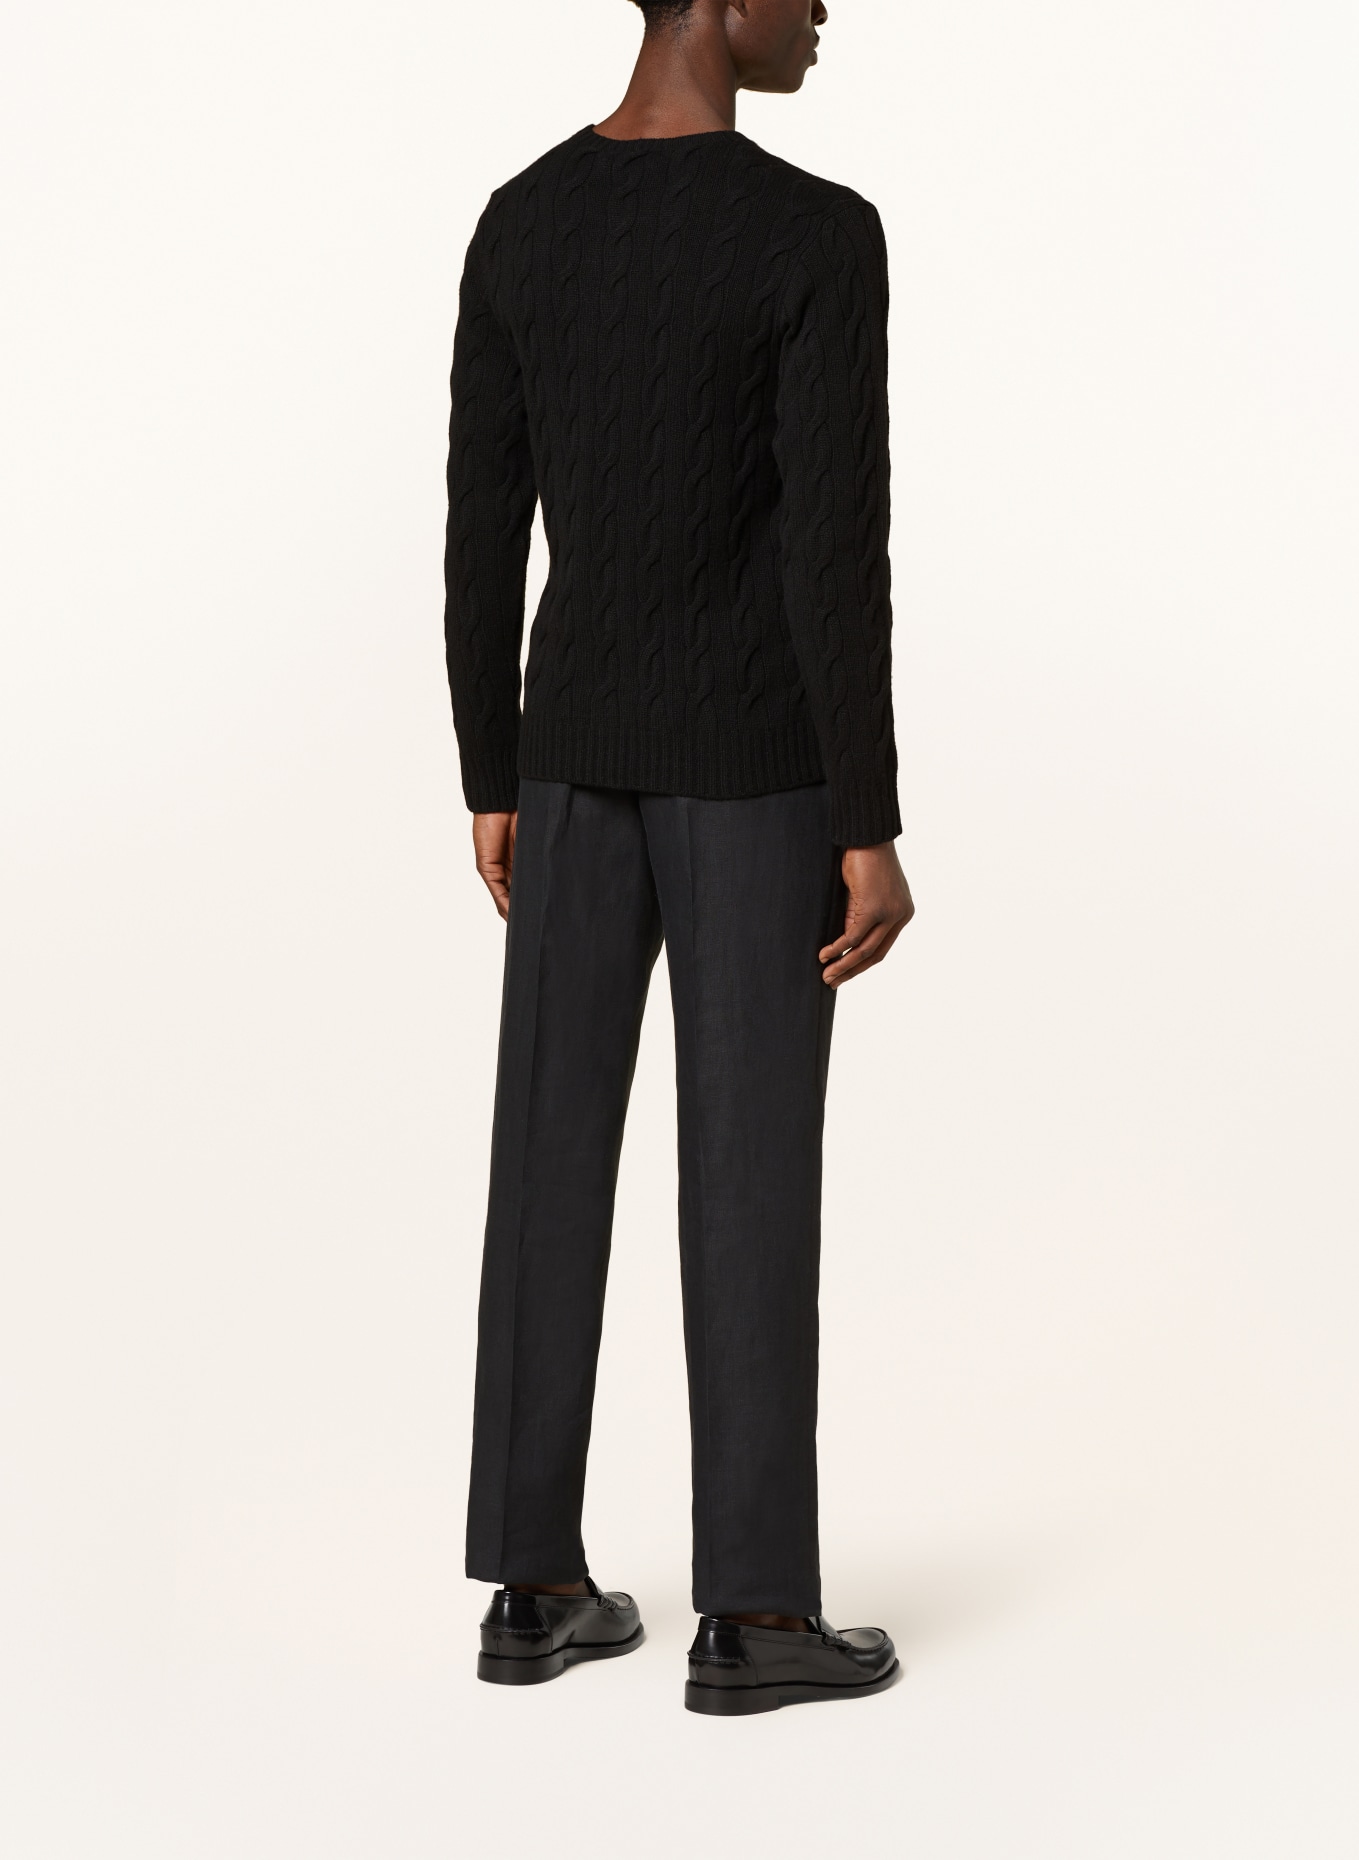 RALPH LAUREN PURPLE LABEL Cashmere sweater, Color: BLACK (Image 3)